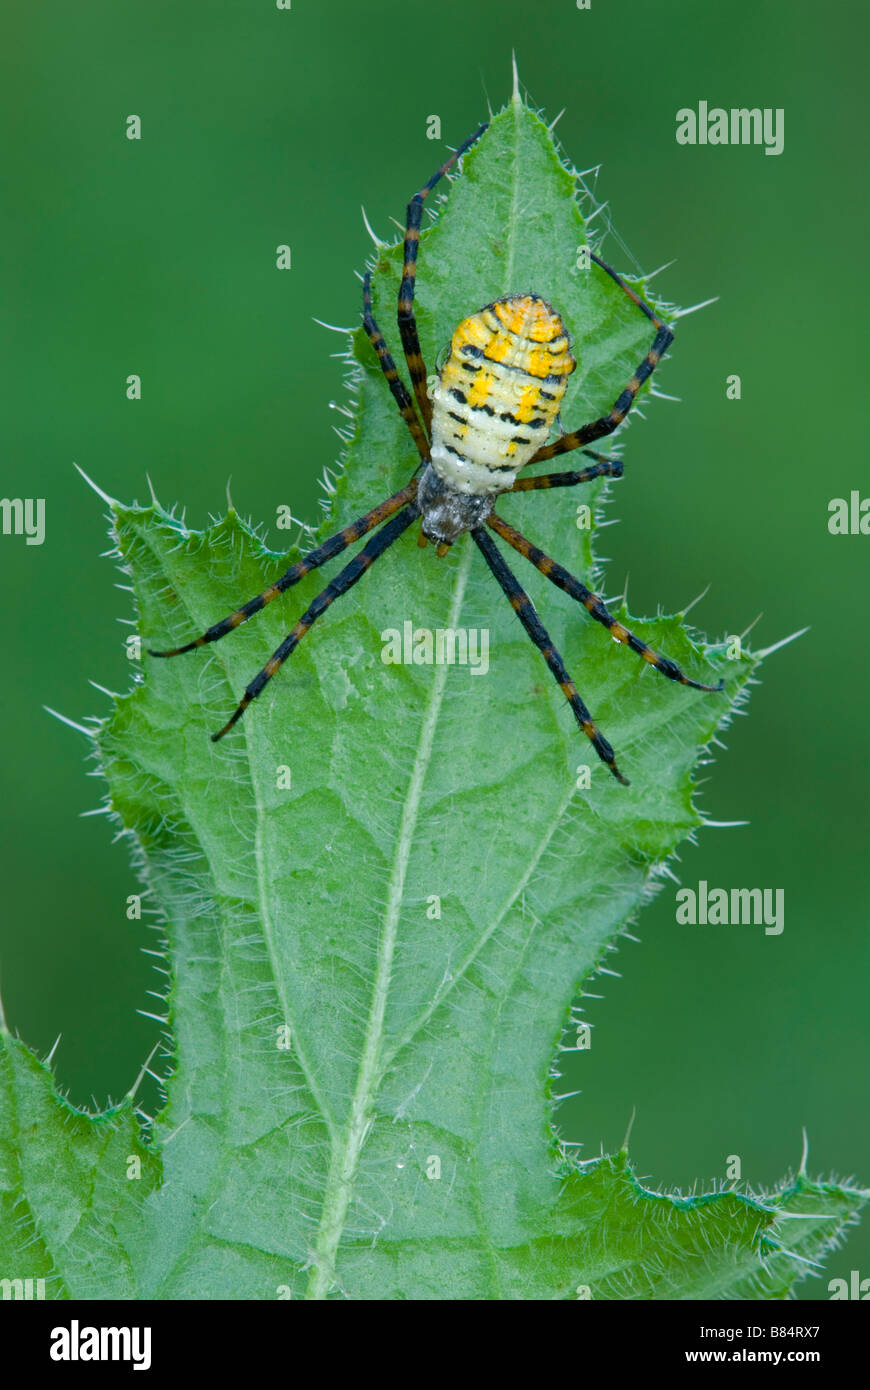 Garten oder Gebändert Argiope Spider Argiope trifasciata auf Thistle blatt Michigan USA, durch Überspringen Moody/Dembinsky Foto Assoc Stockfoto